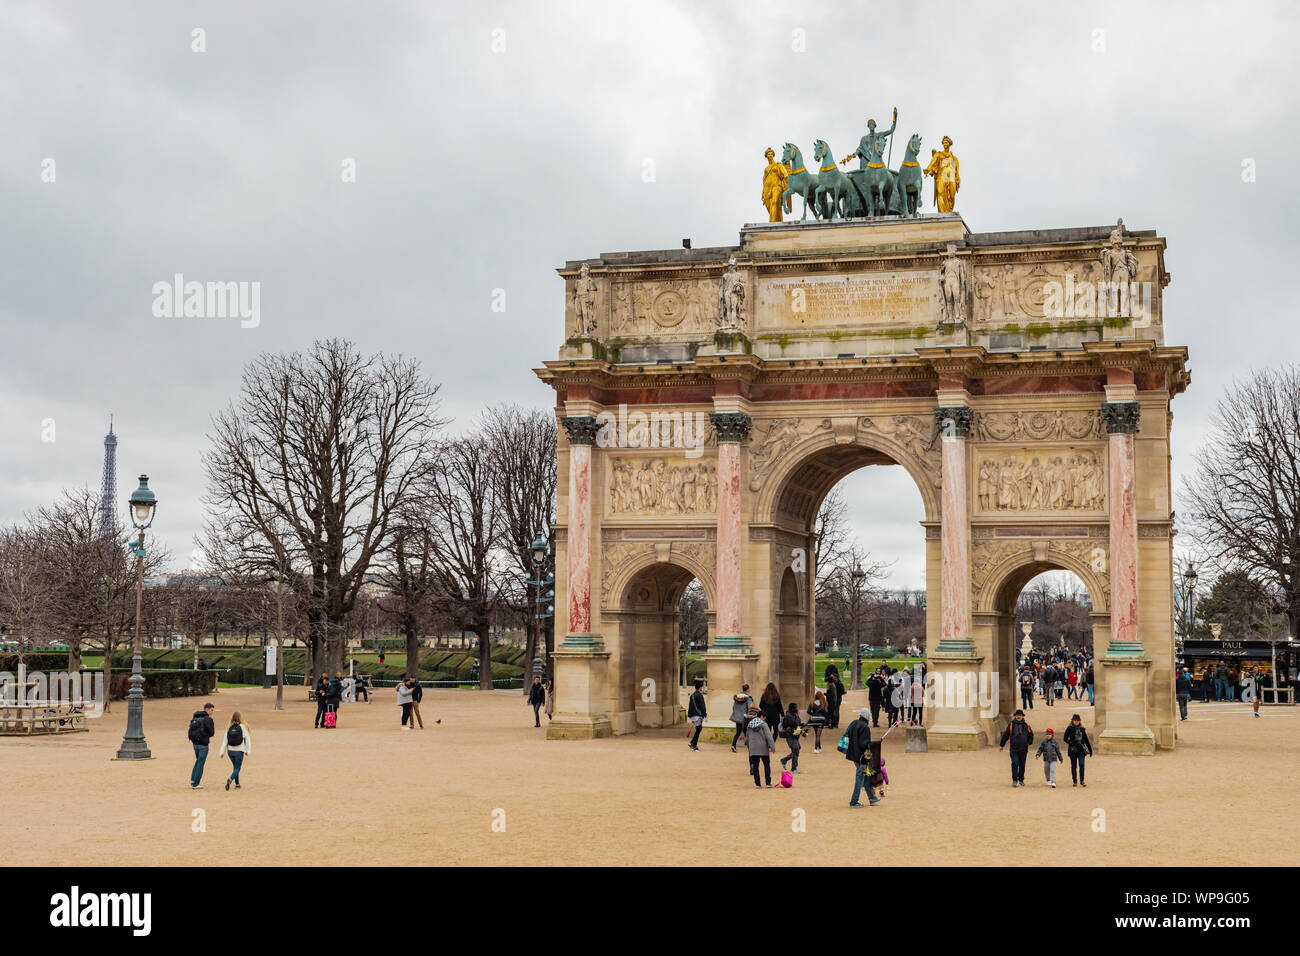 Paris, France - 28 janvier 2018 : les touristes se sont réunis autour de l'emblématique Arc de Triomphe du carrousel historique sur un jour nuageux et pluvieux, avec Eiffel Tower Banque D'Images